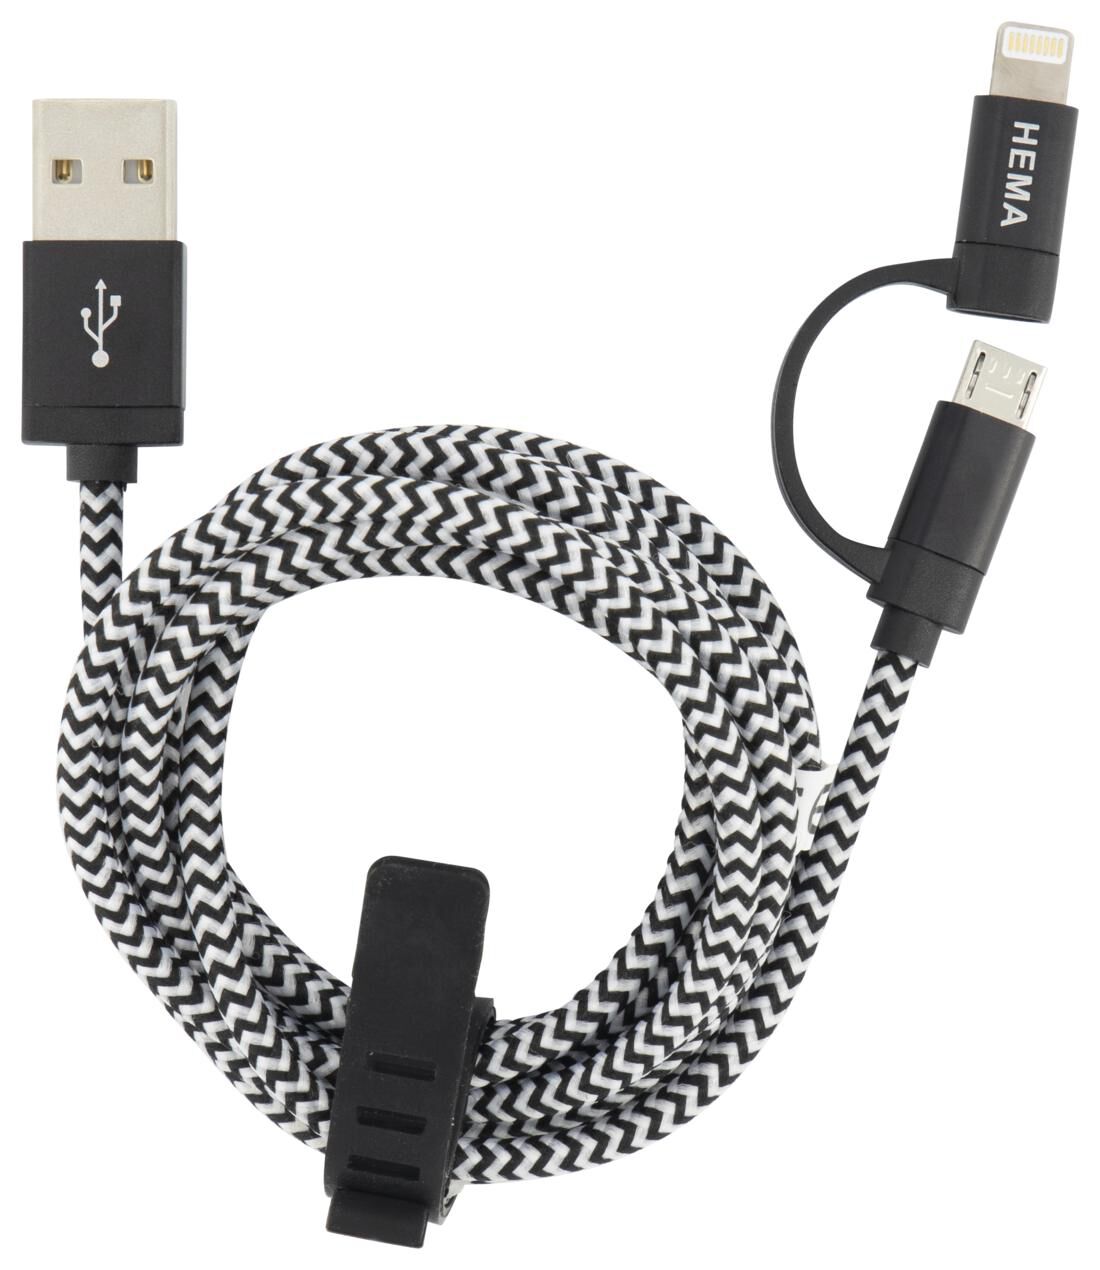 USB laadkabel micro-USB en 8-pin - zwart - HEMA